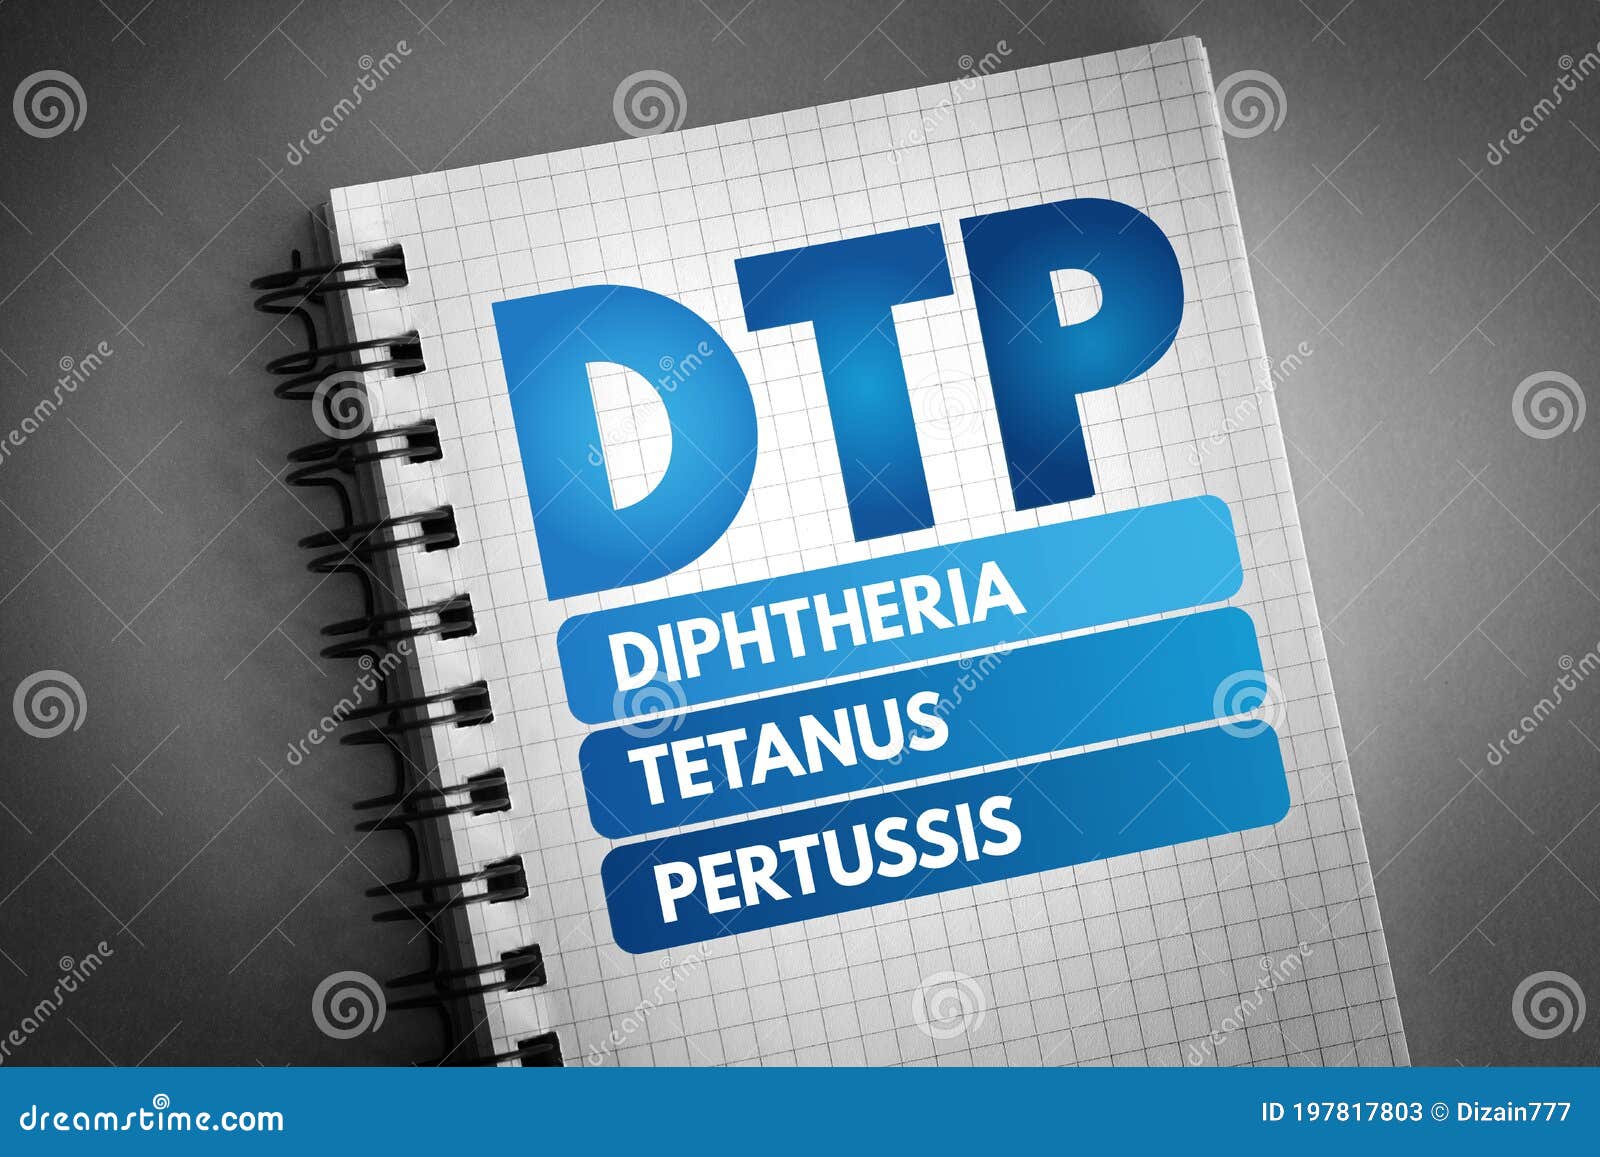 dtp - diphtheria tetanus pertussis acronym